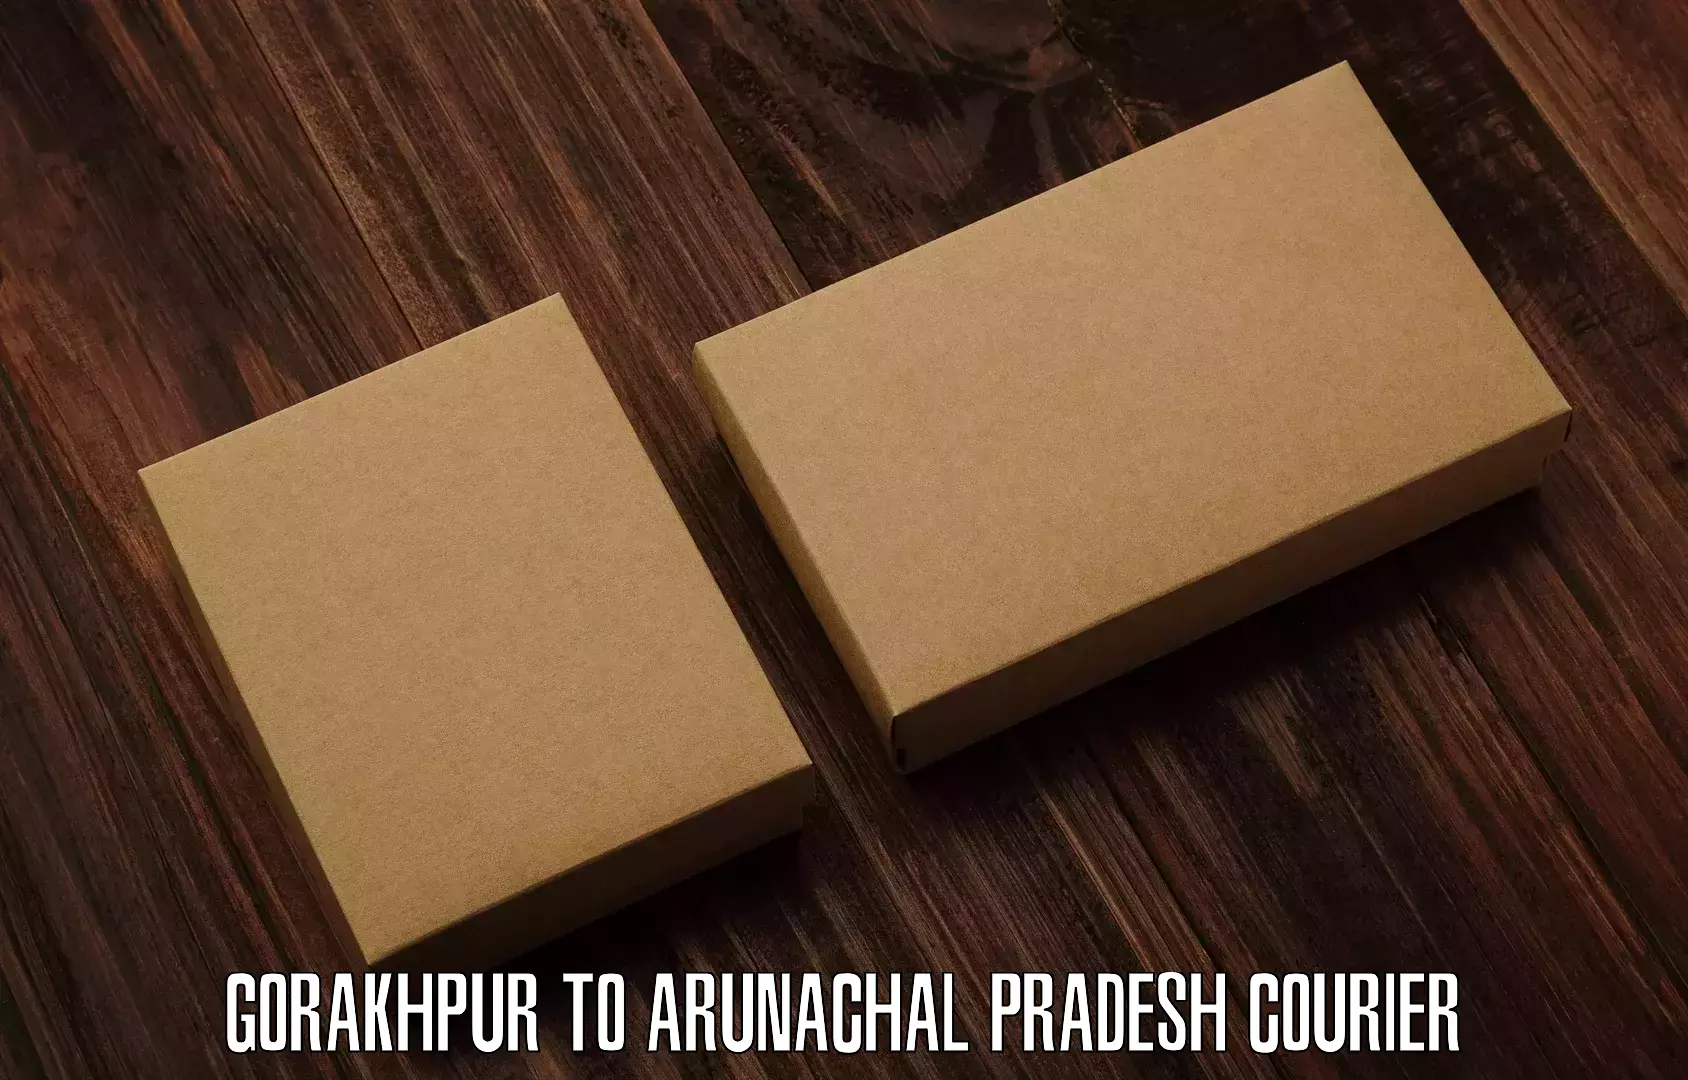 Next-day delivery options Gorakhpur to Tezu